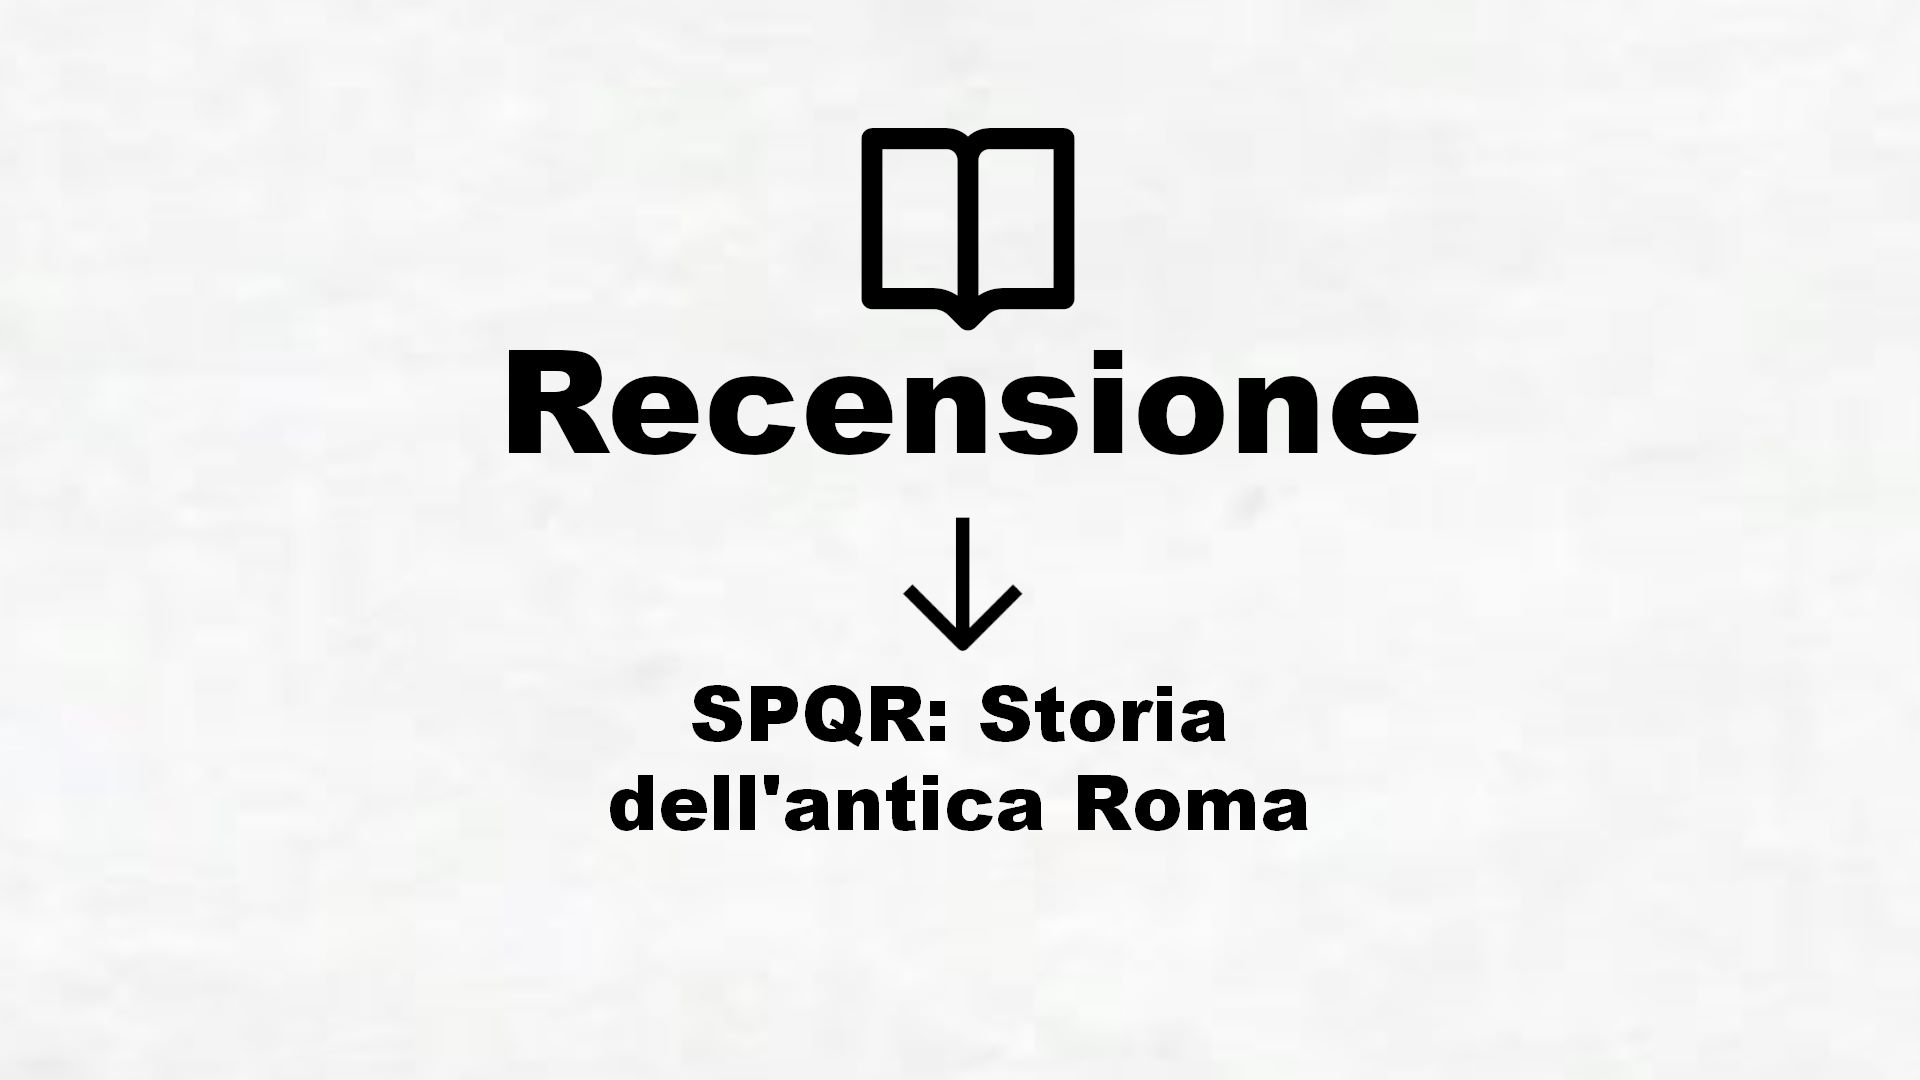 SPQR: Storia dell’antica Roma – Recensione Libro